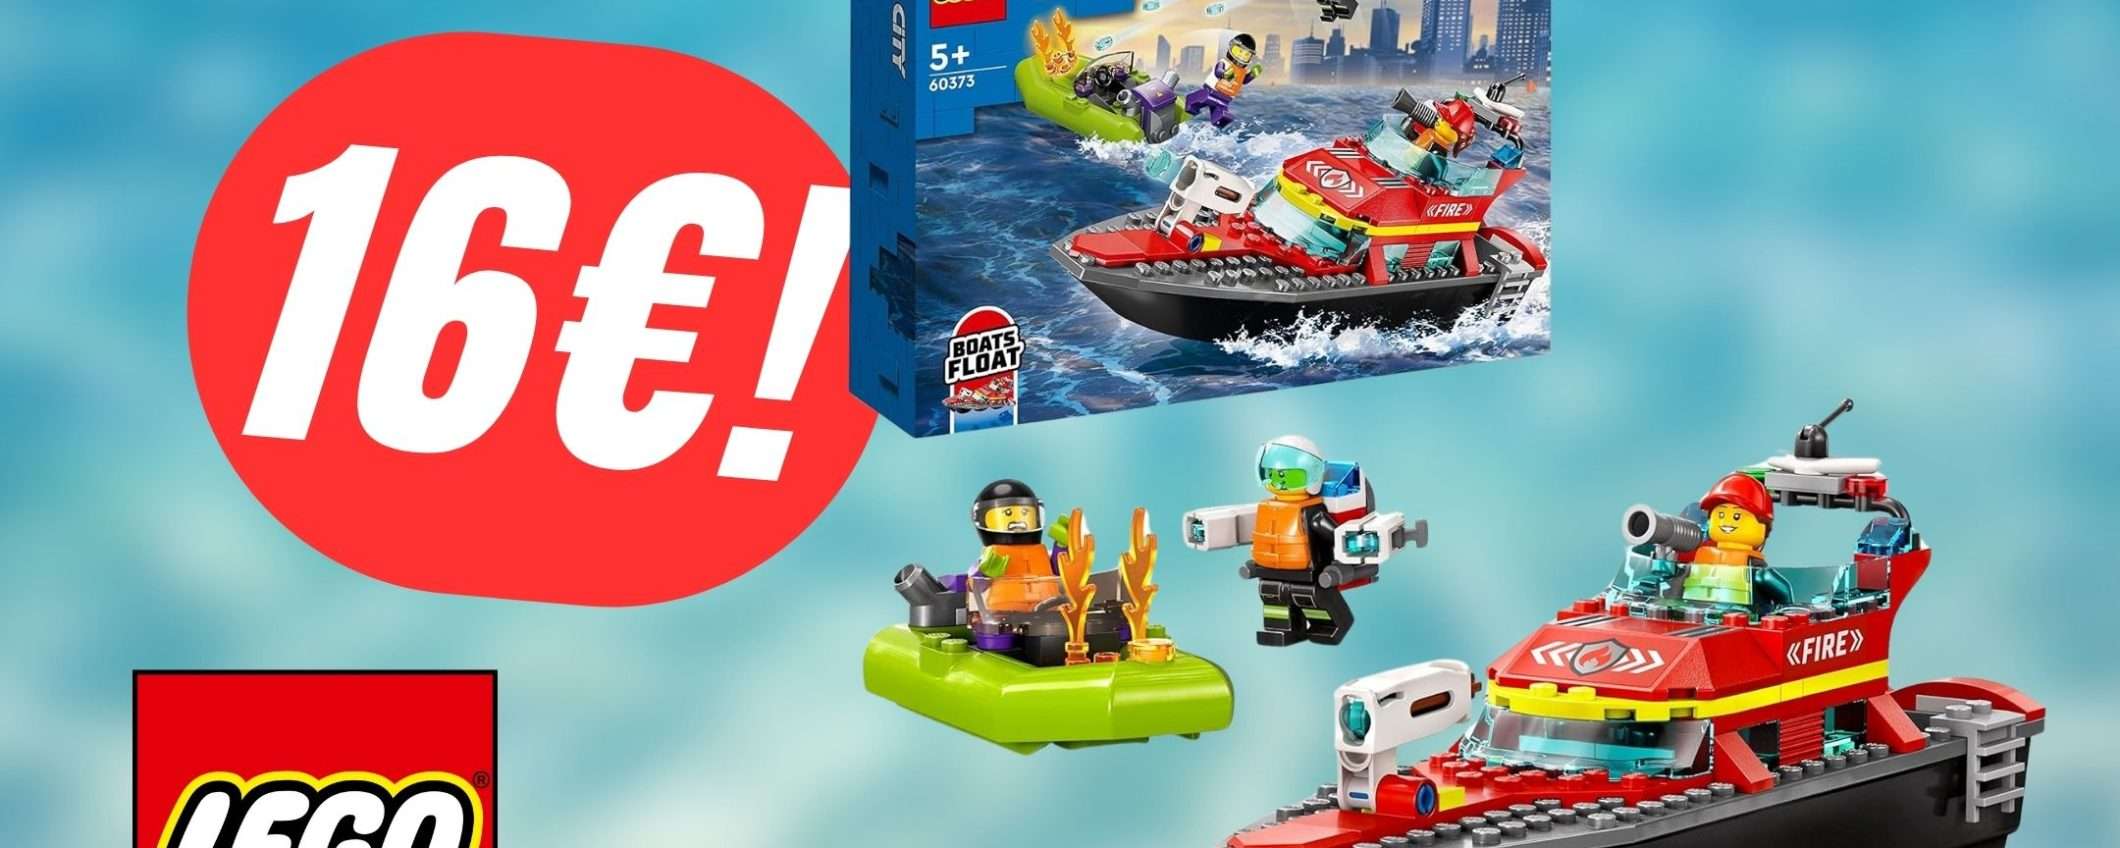 Questo Incredibile set LEGO costa solo 16€!